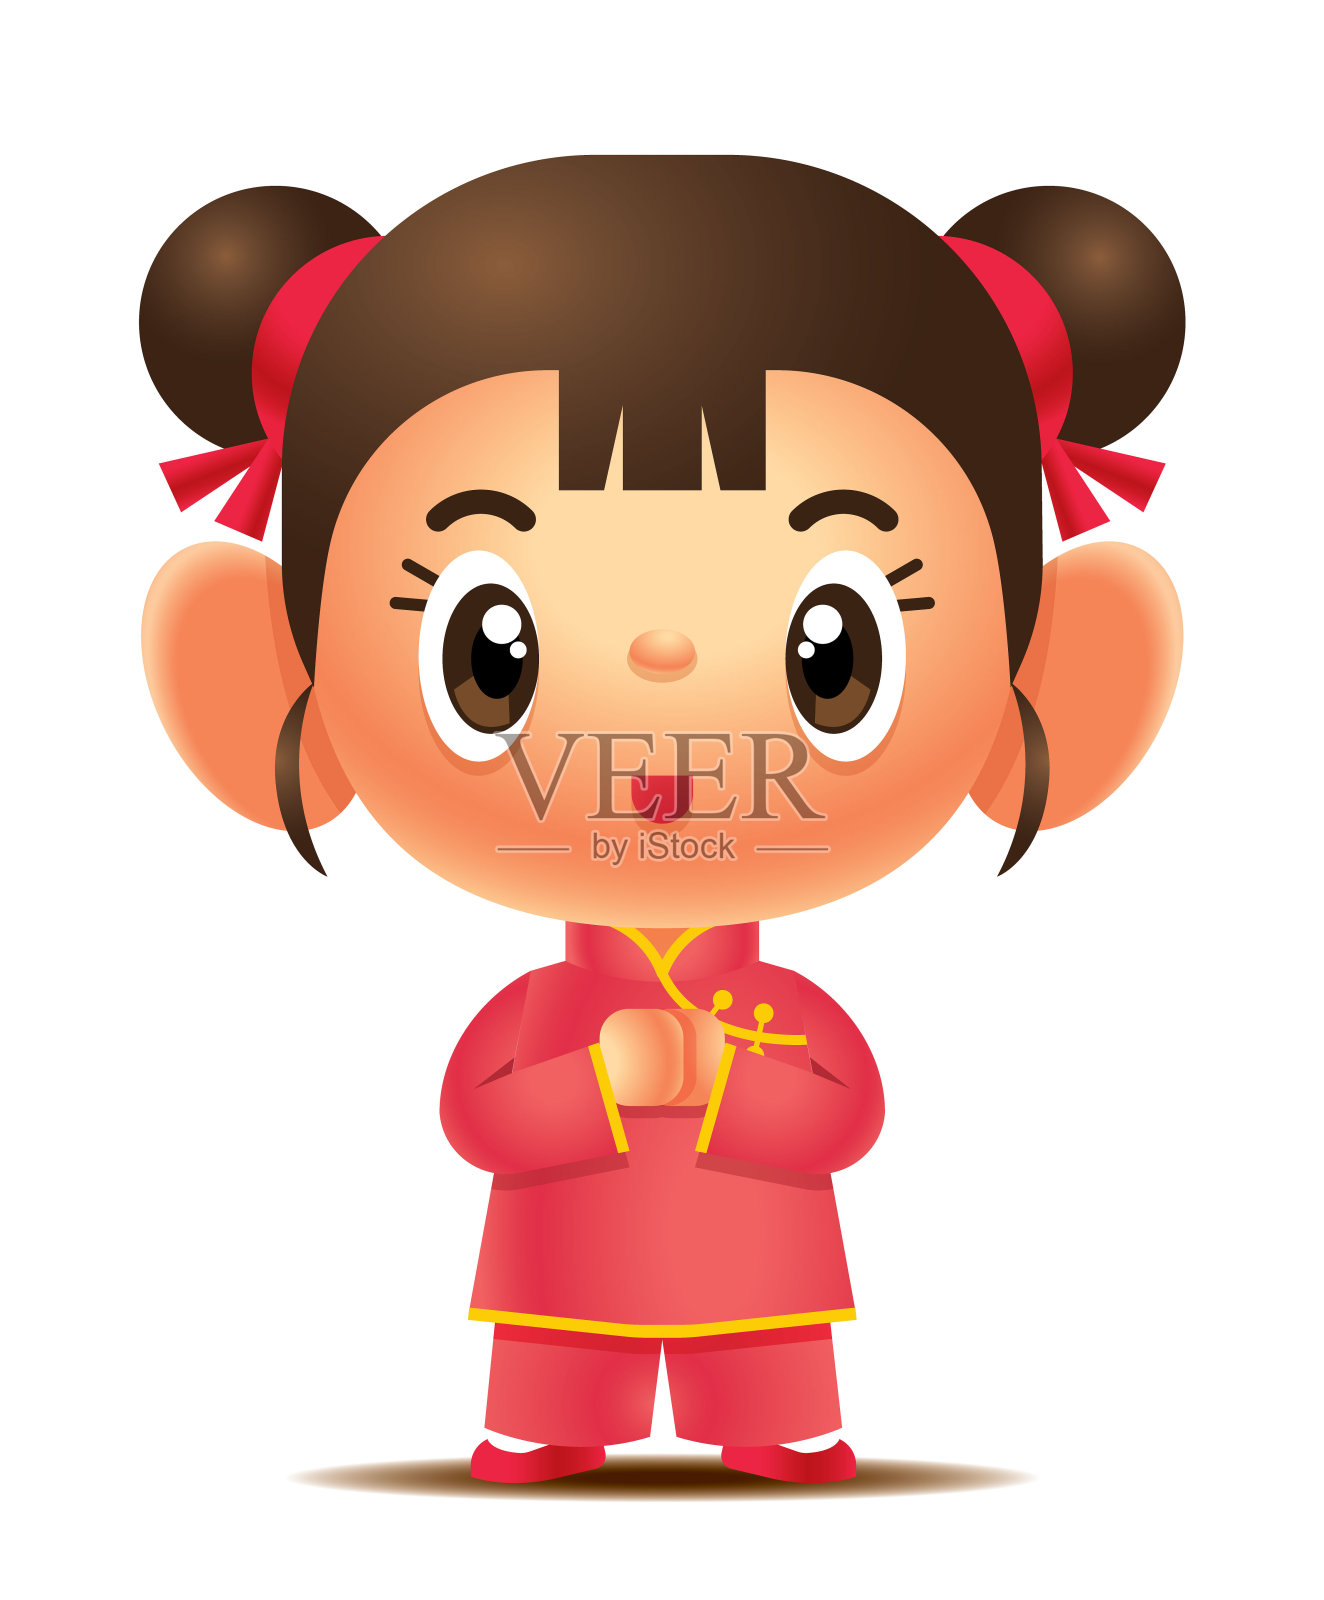 卡通可爱的中国女孩和男孩角色集。中国的孩子们祝春节快乐-向量吉祥物设计元素图片